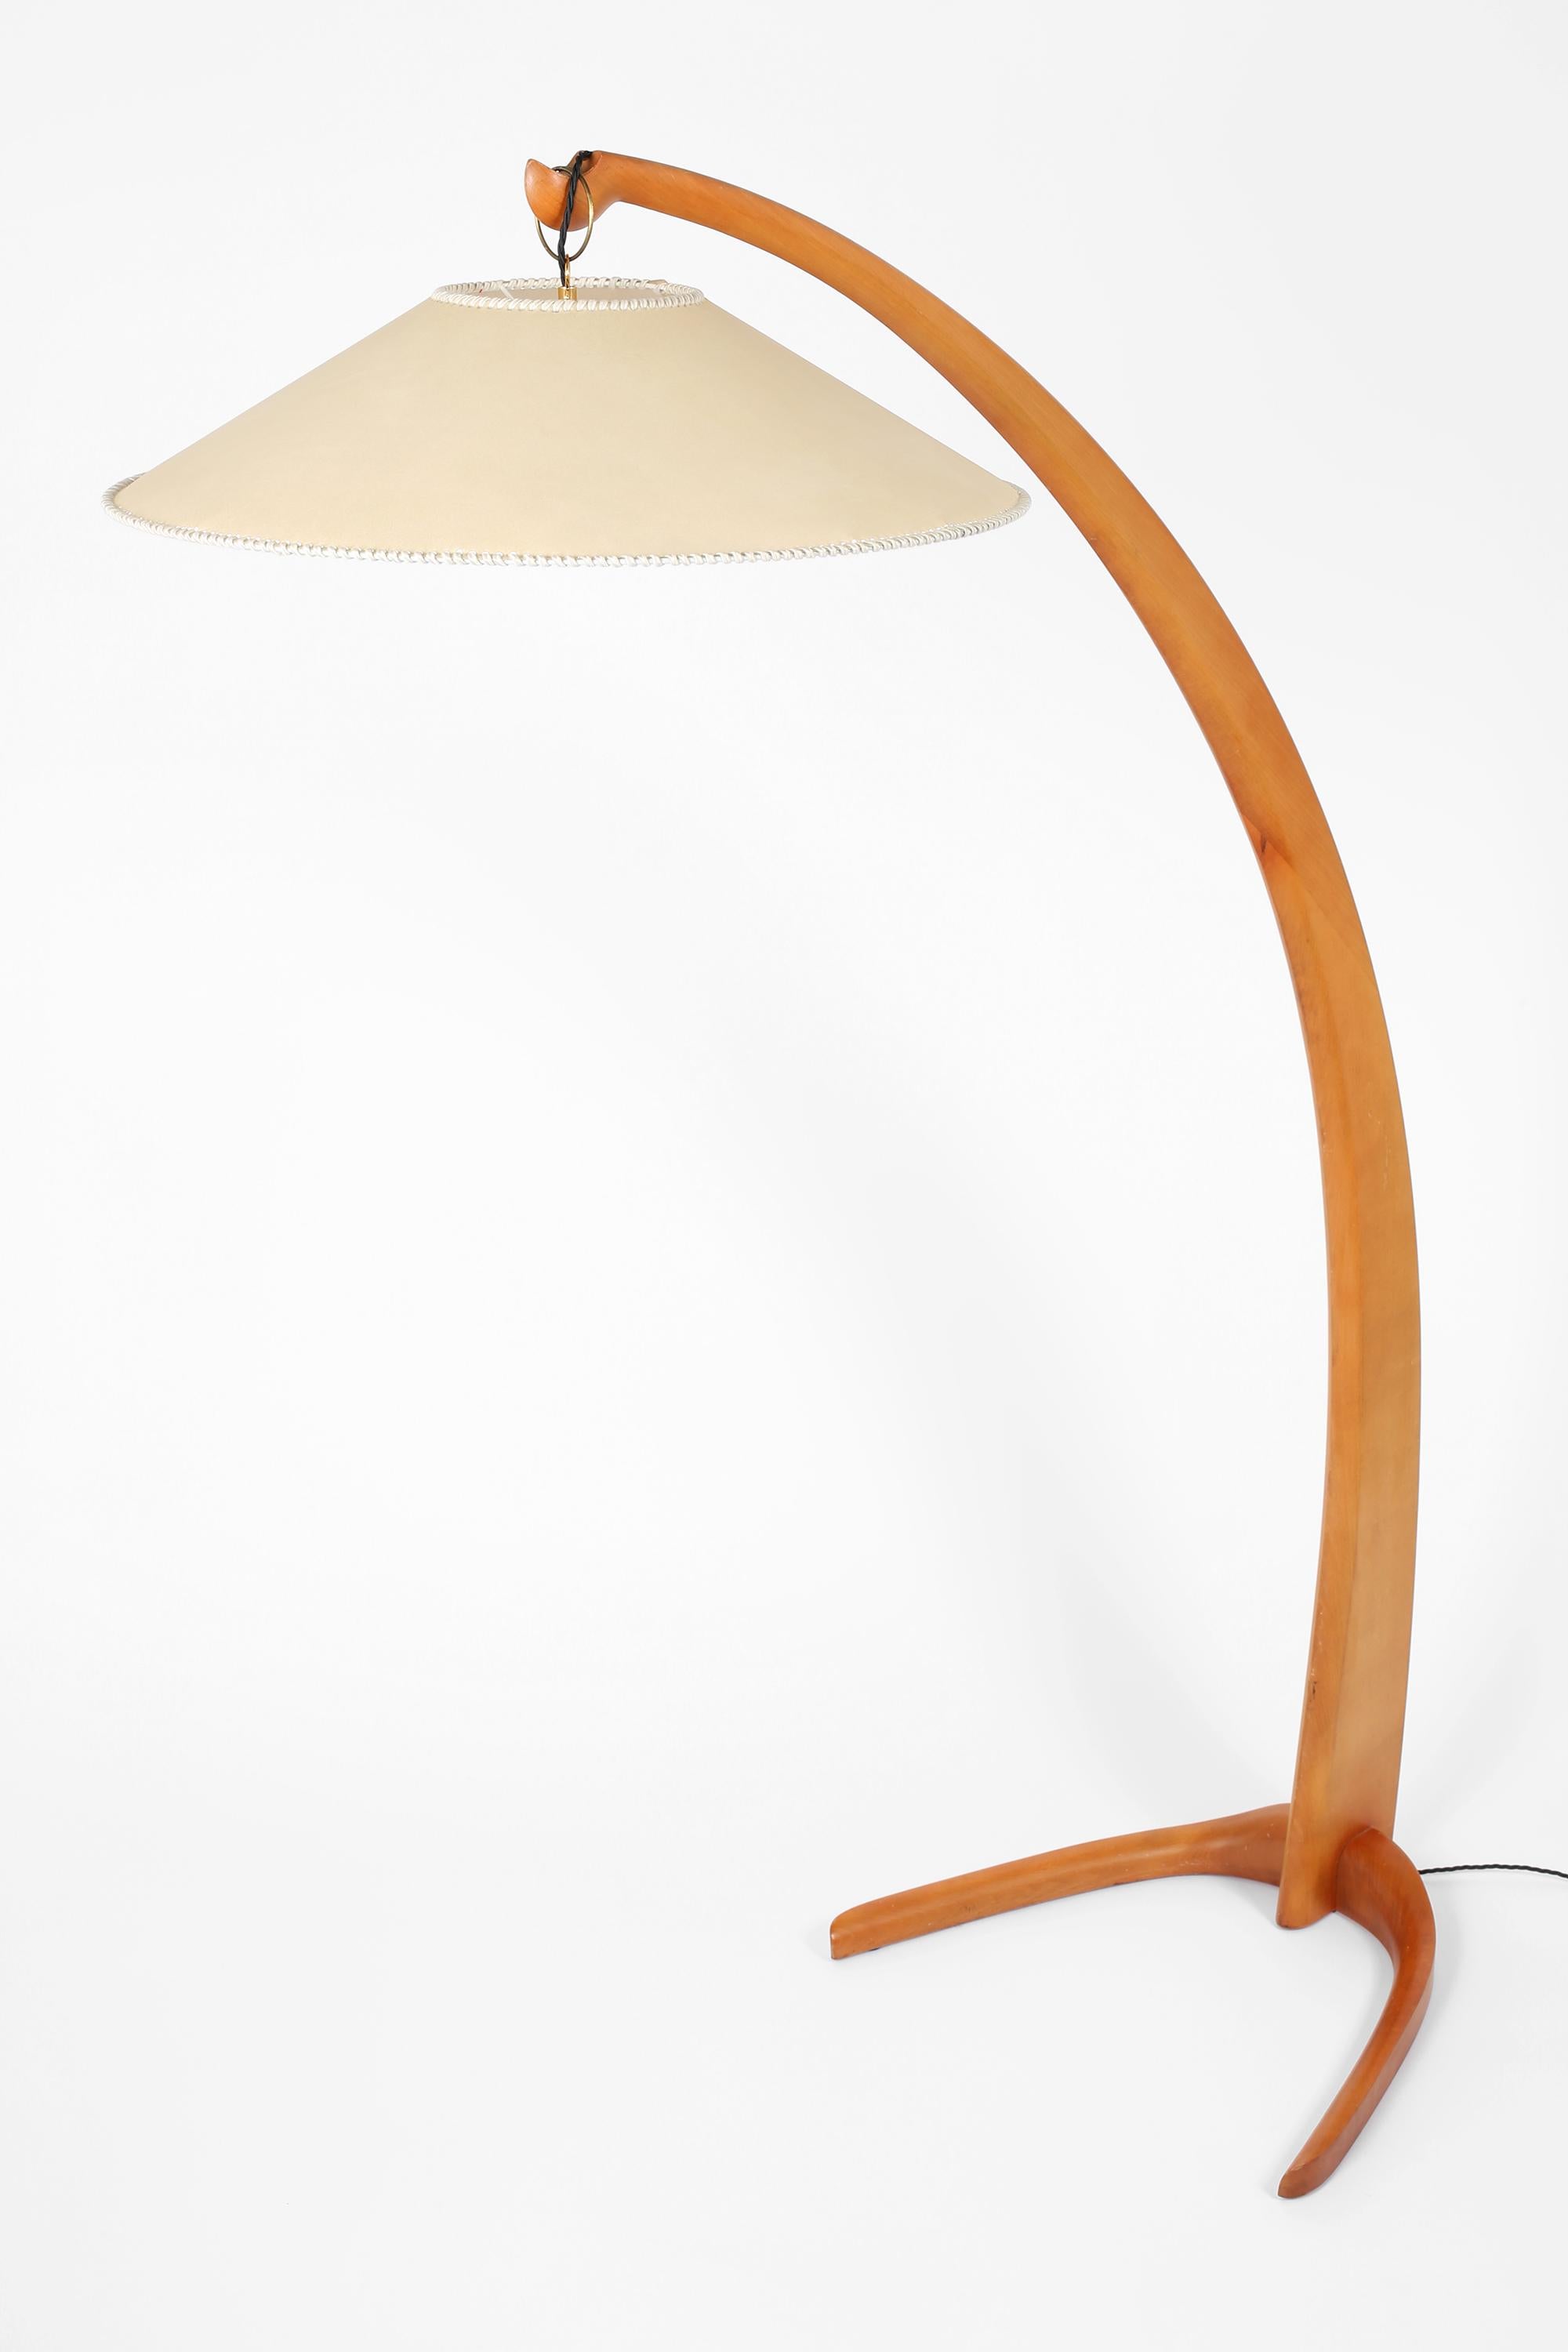 Italian 1970s Curved Beech Arc Floor Lamp For Sale 4